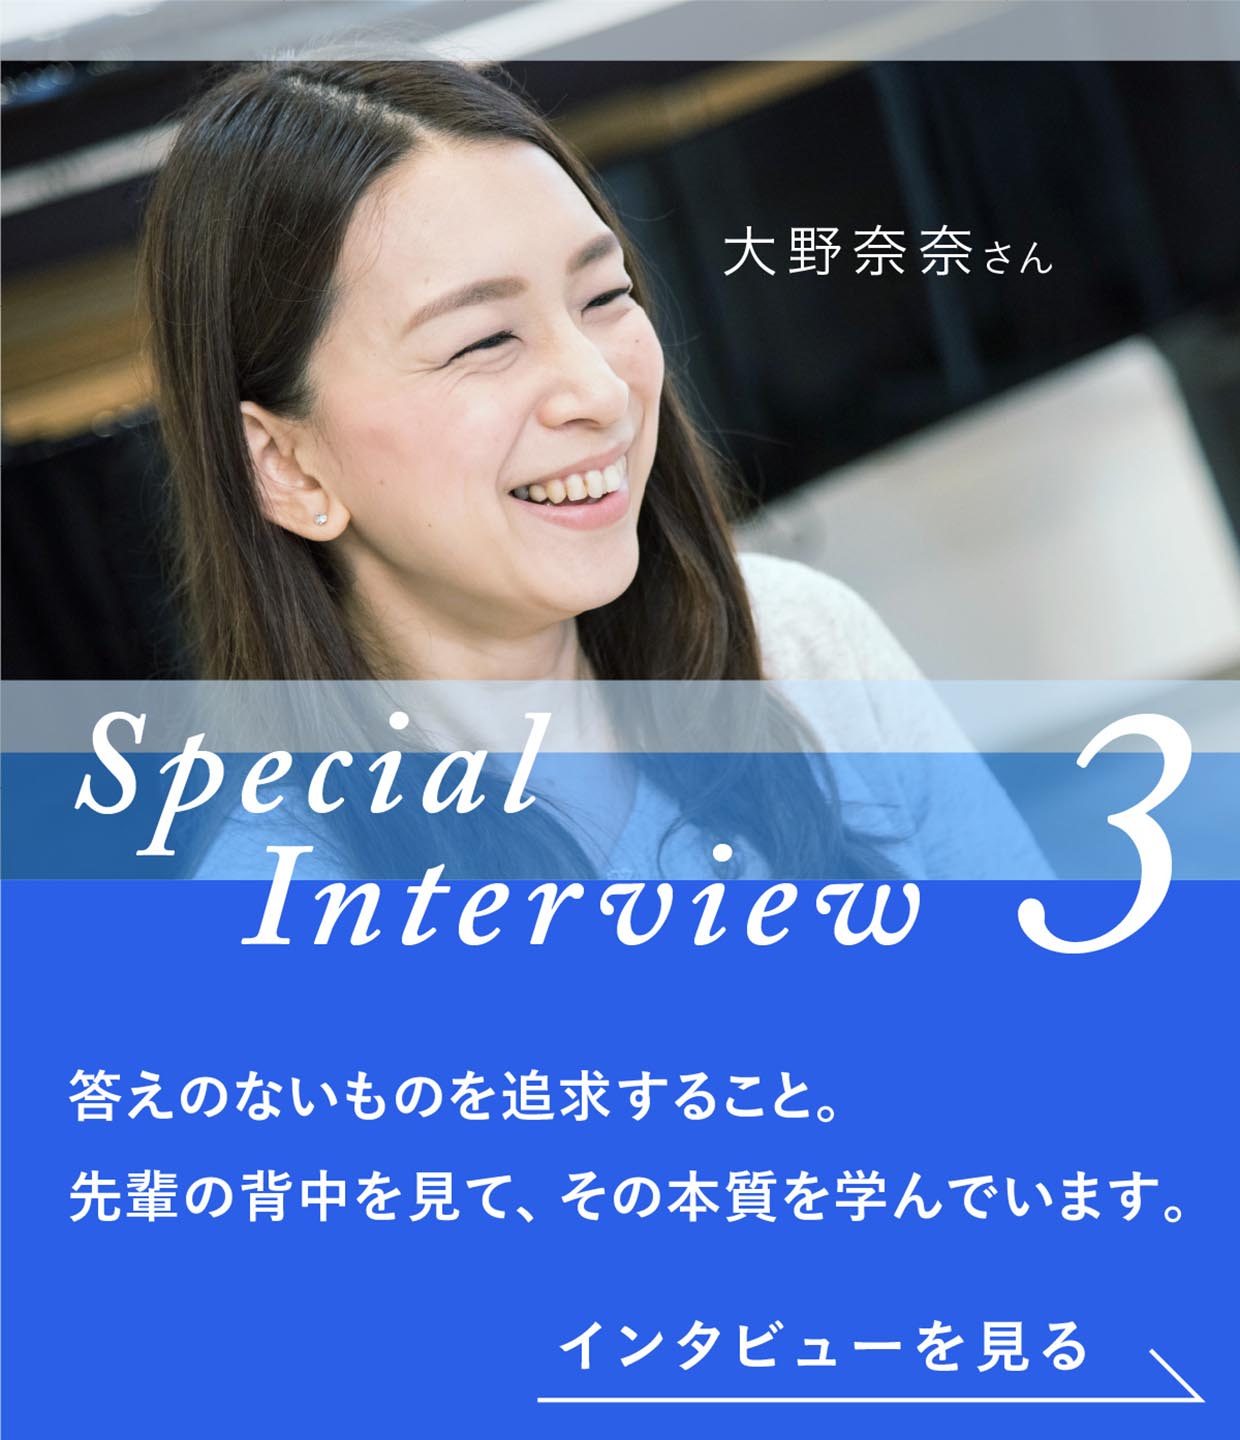 Special Interview3 大野奈奈さん 答えのないものを追求すること。先輩の背中を見て、その本質を学んでいます。インタビューを見る